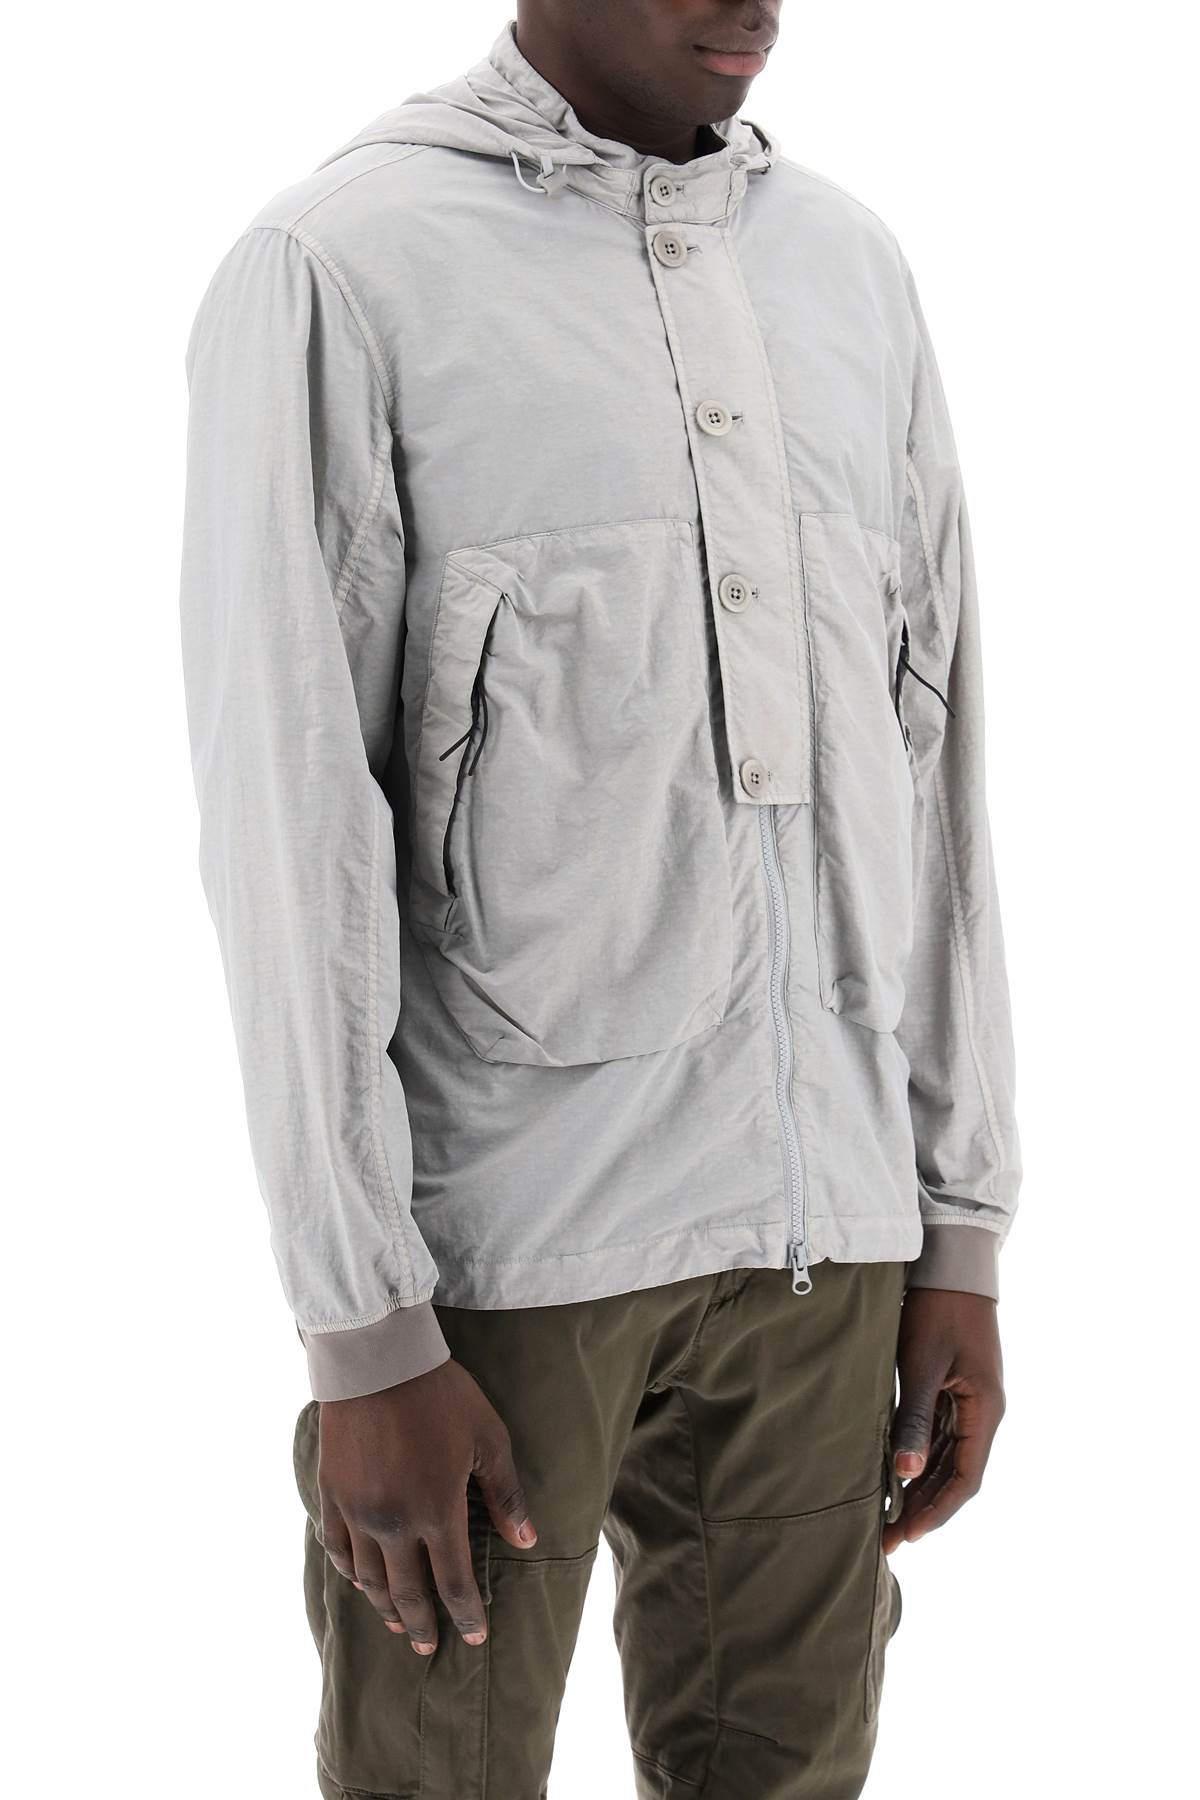 C.P. Company "flatt nylon goggle jacket 16CMOS018A005991G913